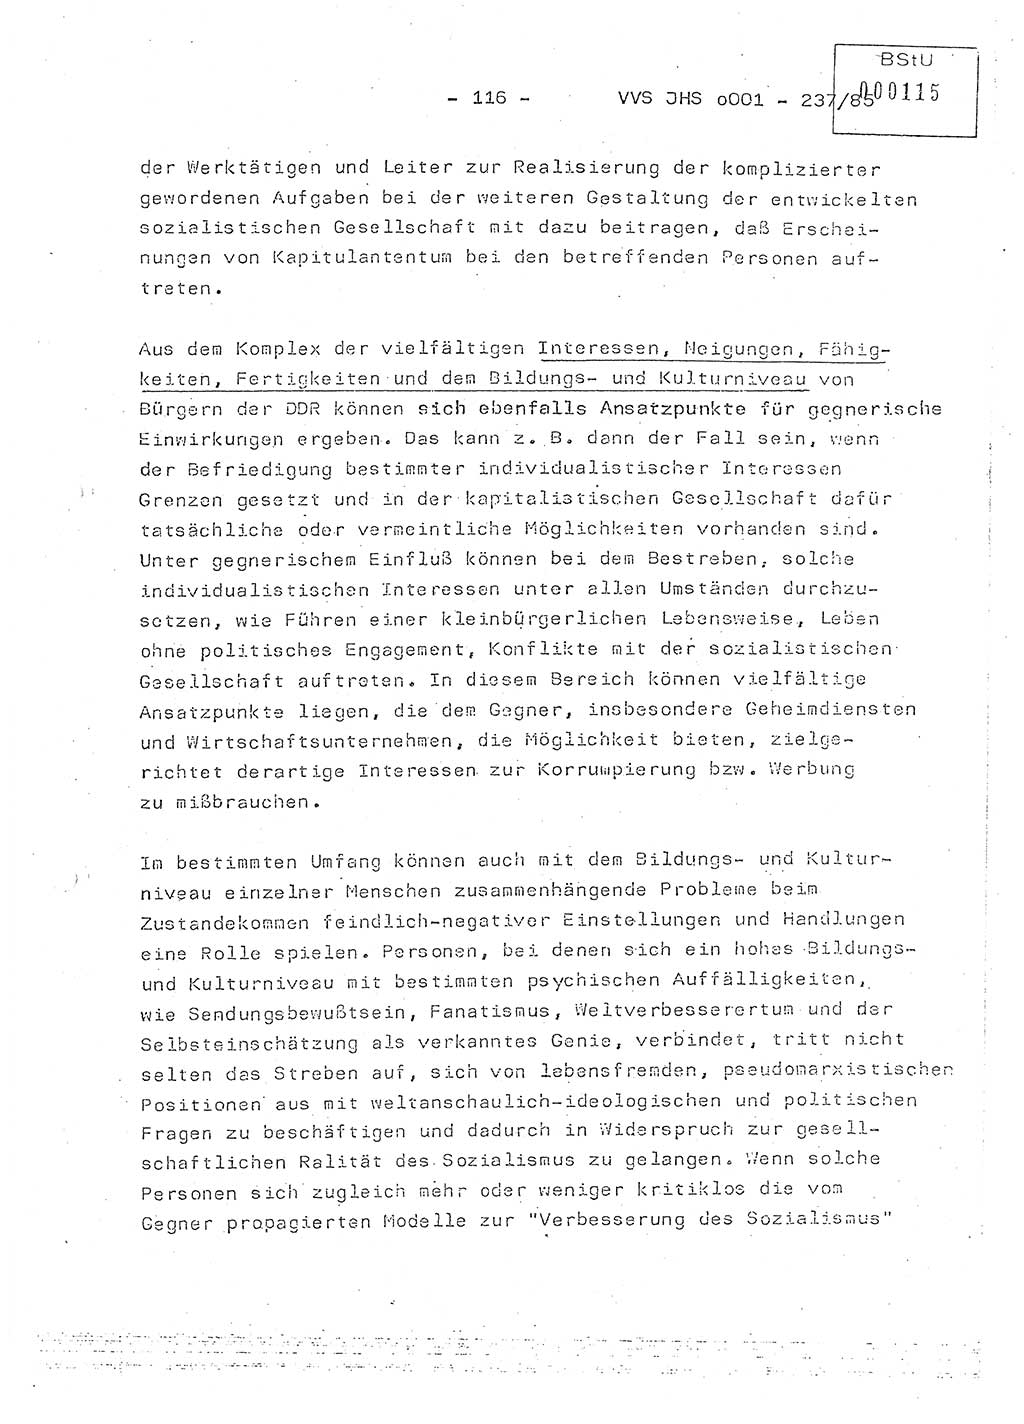 Dissertation Oberstleutnant Peter Jakulski (JHS), Oberstleutnat Christian Rudolph (HA Ⅸ), Major Horst Böttger (ZMD), Major Wolfgang Grüneberg (JHS), Major Albert Meutsch (JHS), Ministerium für Staatssicherheit (MfS) [Deutsche Demokratische Republik (DDR)], Juristische Hochschule (JHS), Vertrauliche Verschlußsache (VVS) o001-237/85, Potsdam 1985, Seite 116 (Diss. MfS DDR JHS VVS o001-237/85 1985, S. 116)